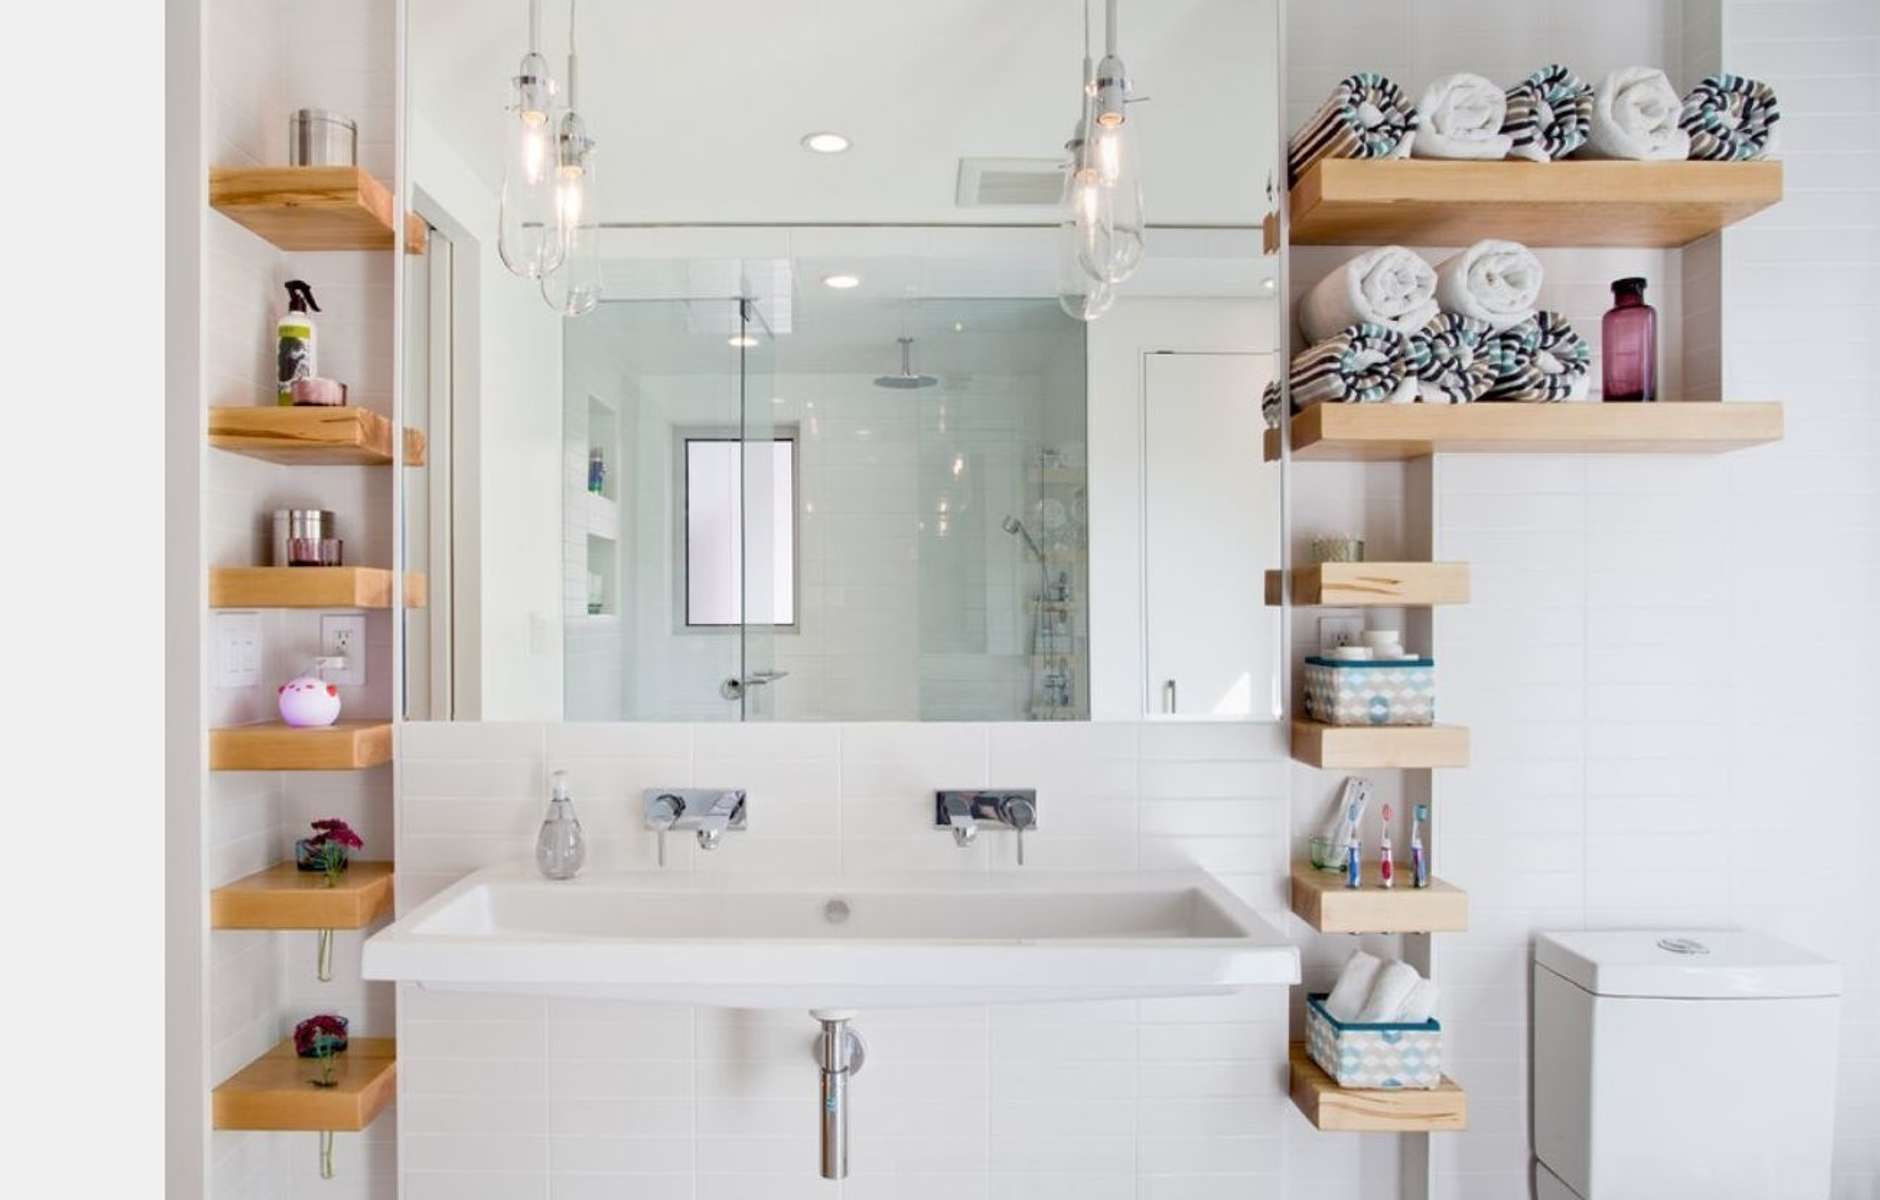 Полочки и ниши в ванную комнату: материалы, конфигурация и расположение, фото удачных вариантов